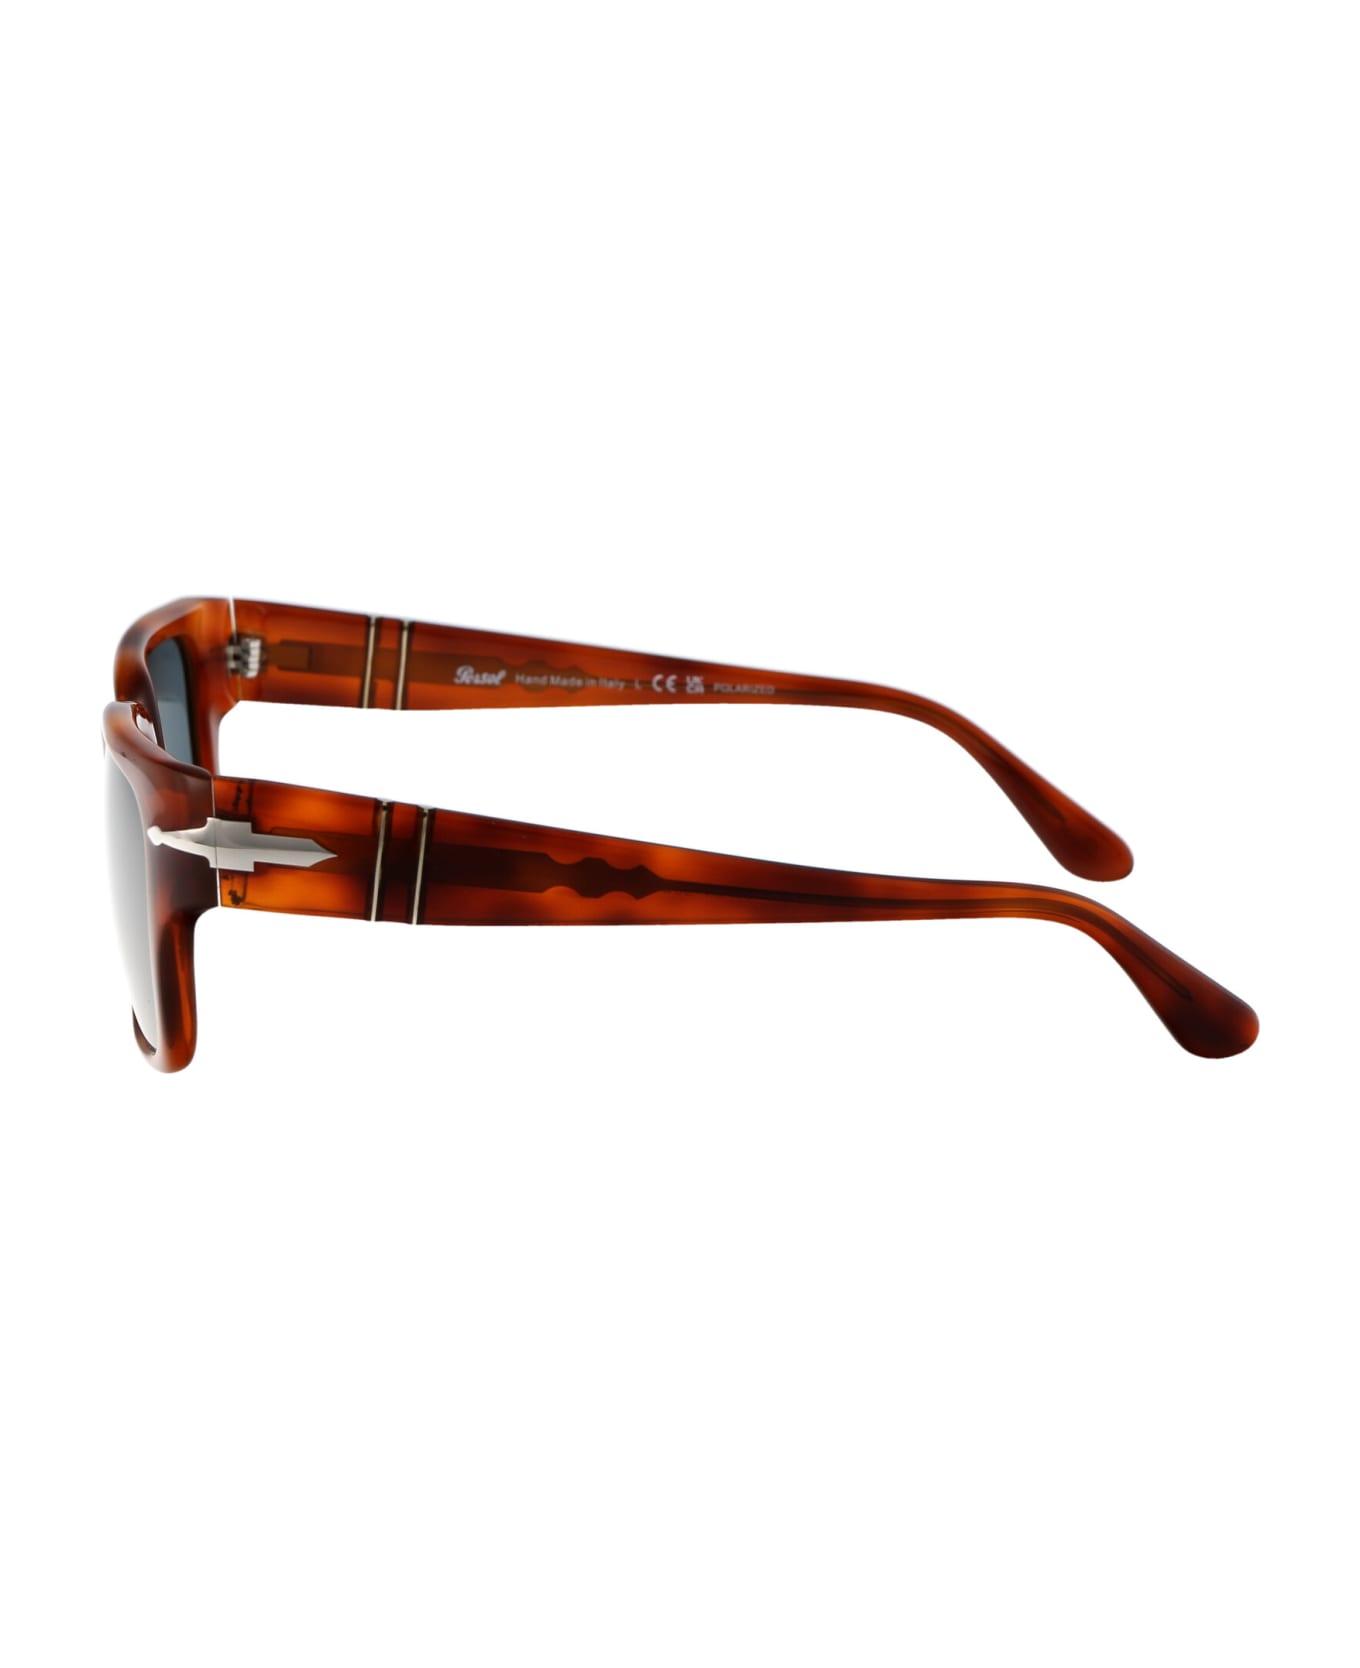 Persol 0po3315s Sunglasses - 96/3R Terra Di Siena サングラス